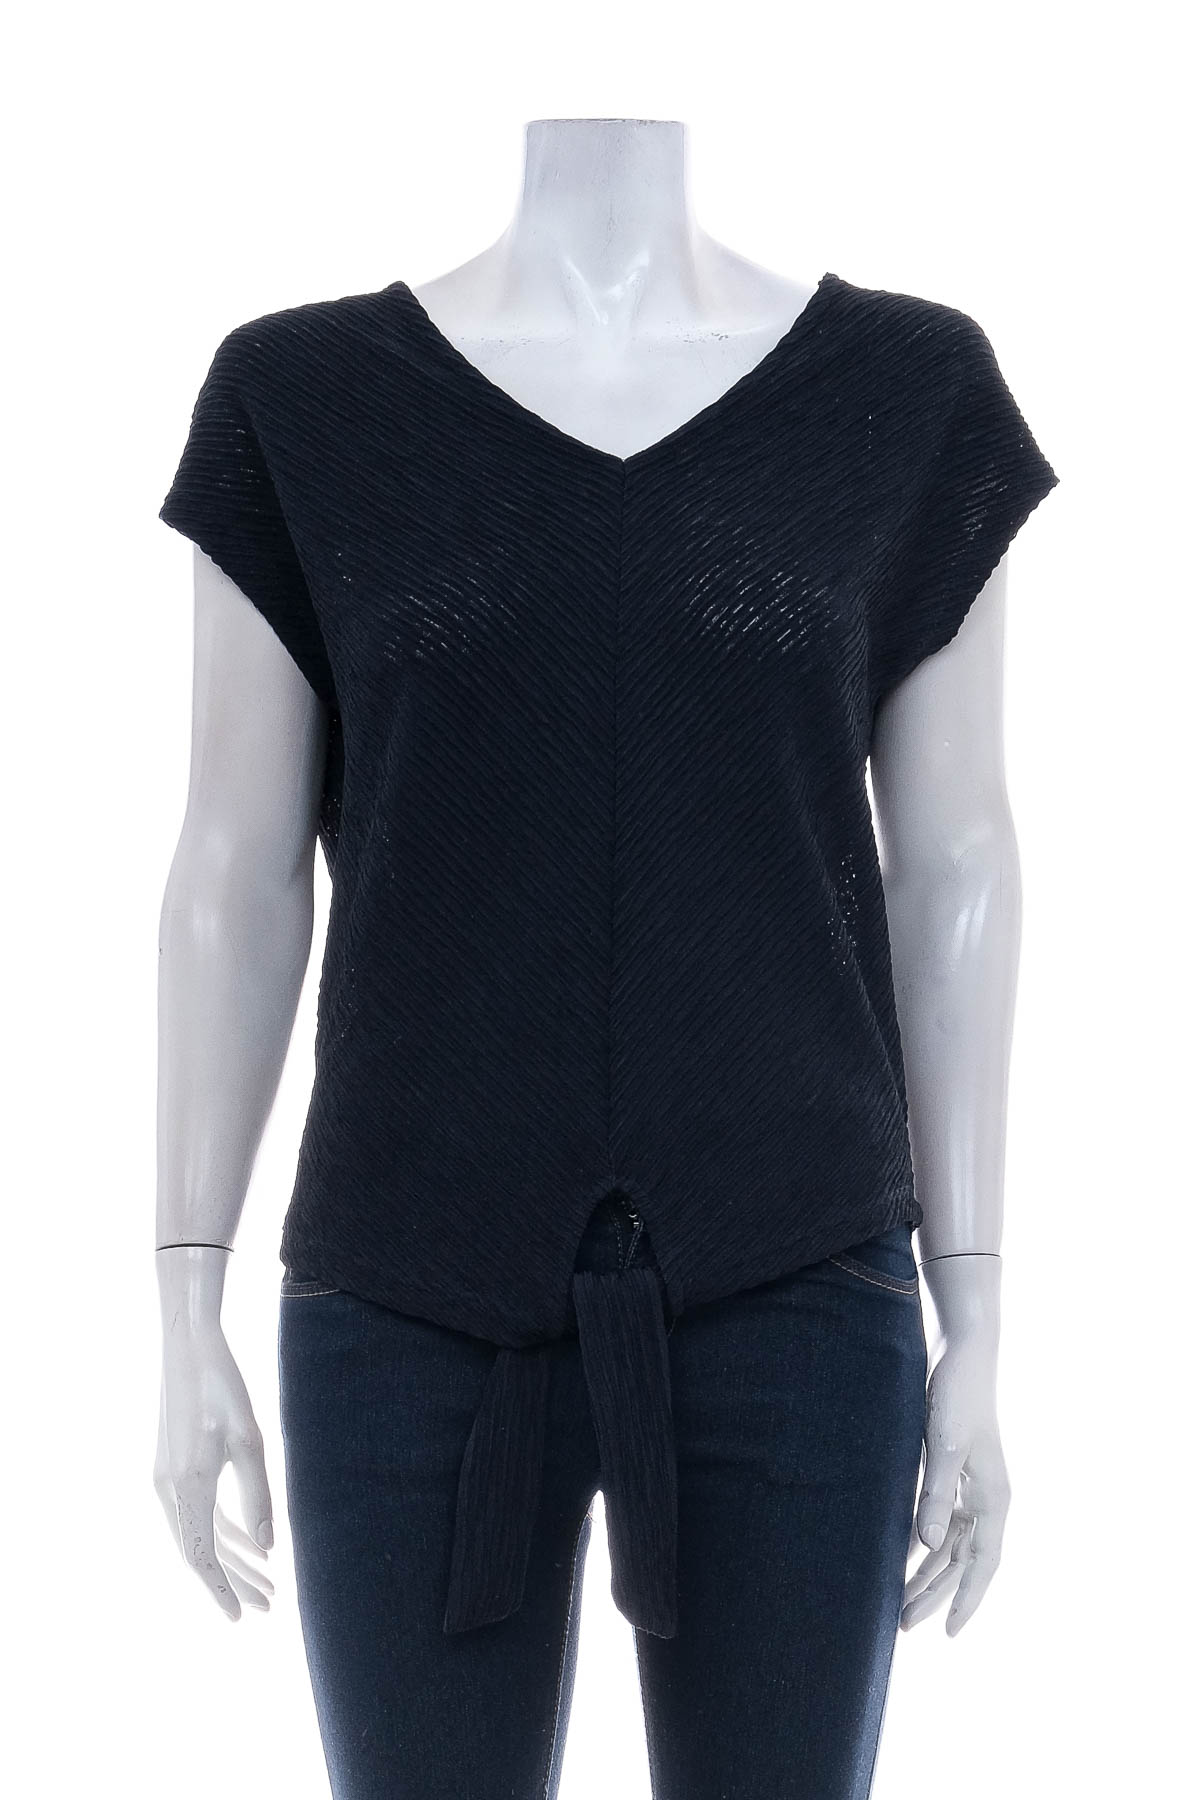 Γυναικεία μπλούζα - Bpc selection bonprix collection - 0